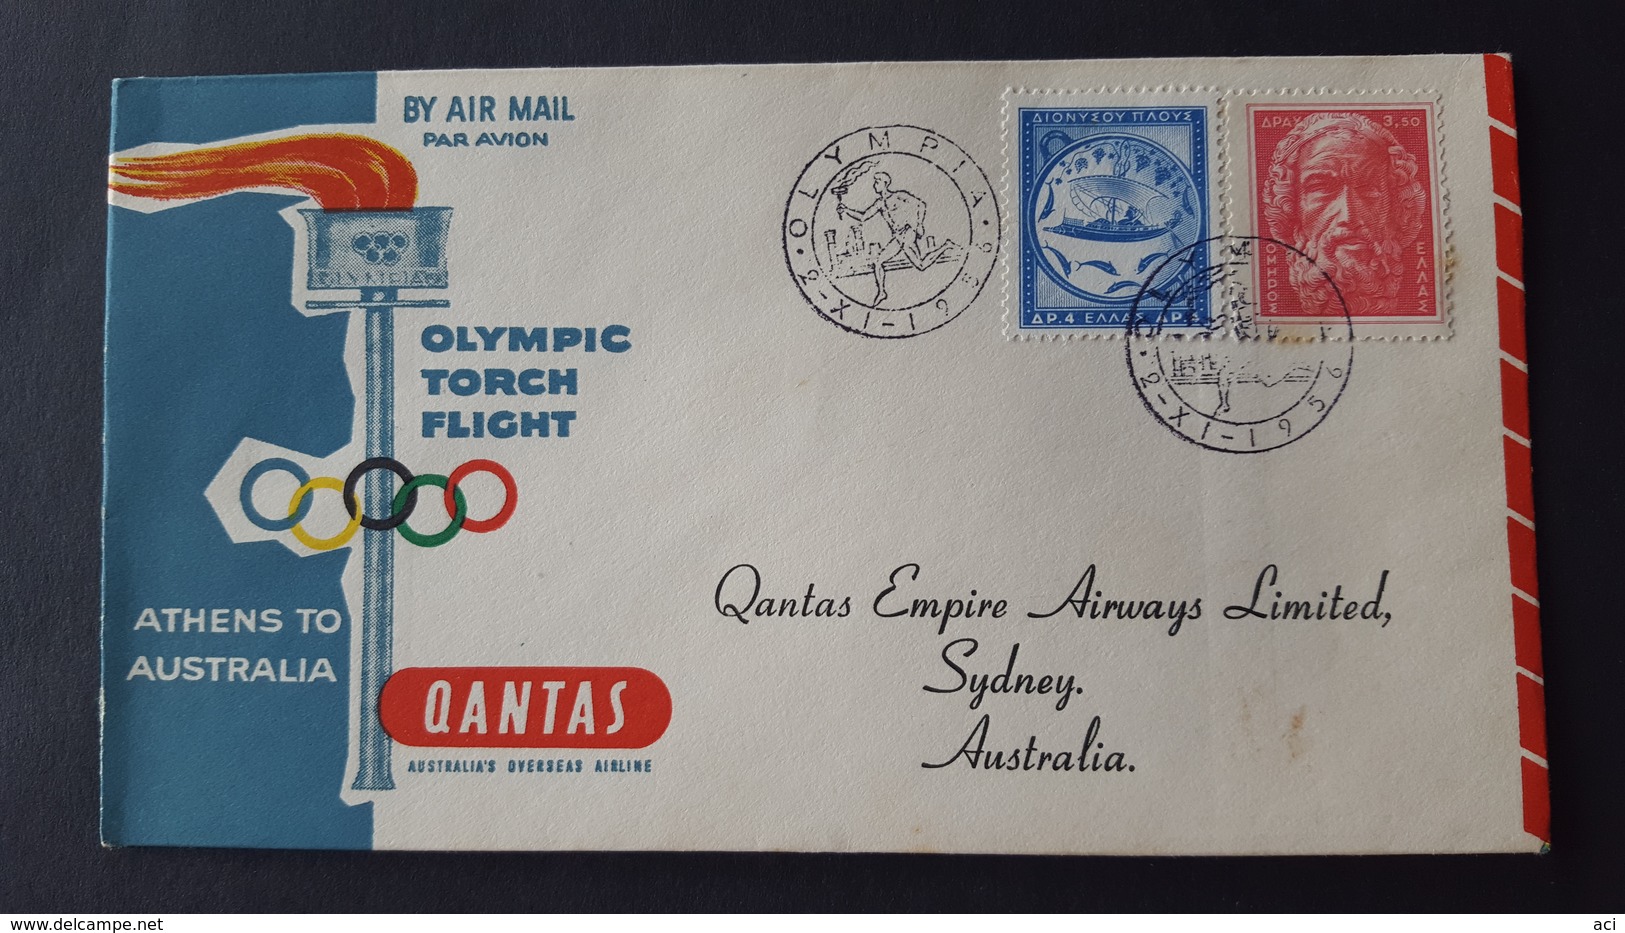 Australia 1956 Qantas Olympic Torch Flight Athens To Australia Souvenir Cover - Primi Voli